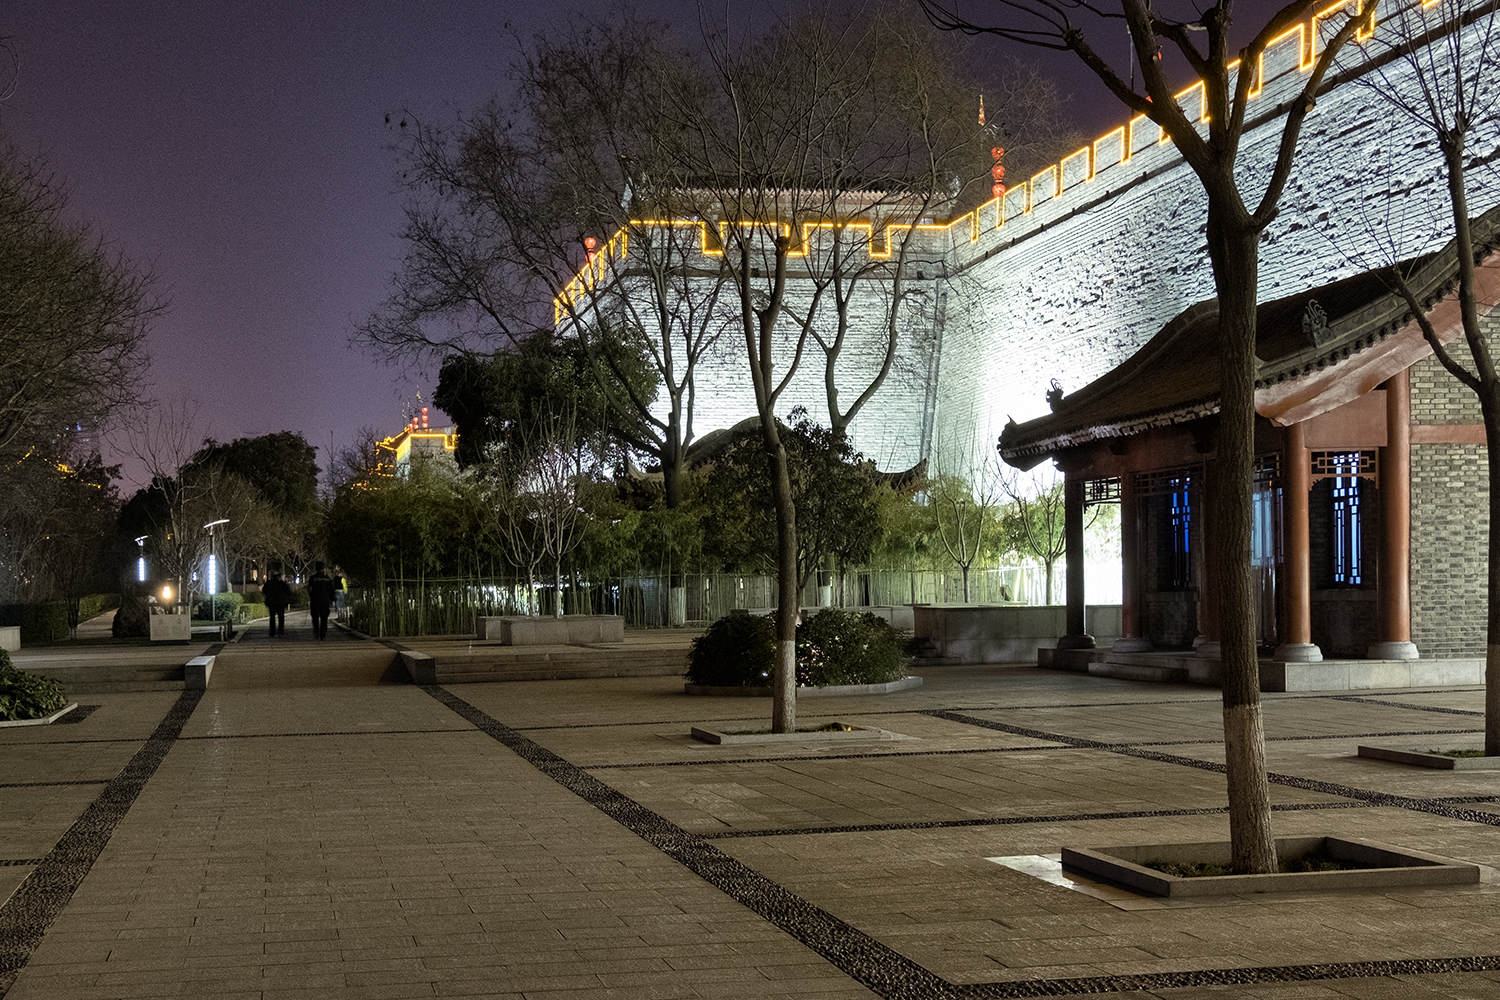 Xi'an City Walls at Night